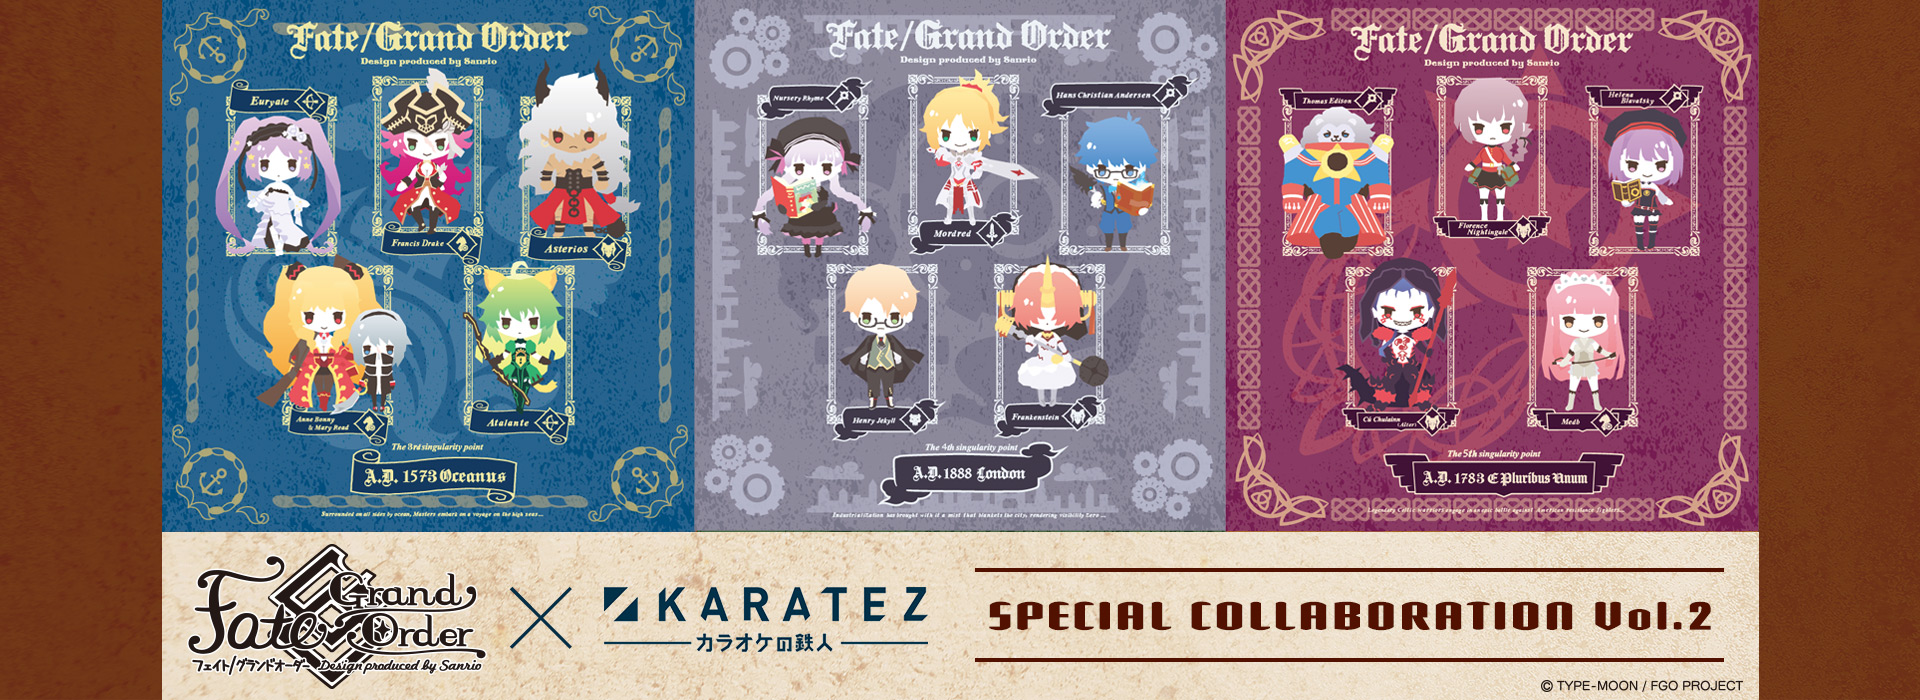 Fate/Grand Order Design produced by Sanrio×カラオケの鉄人 Vol.2